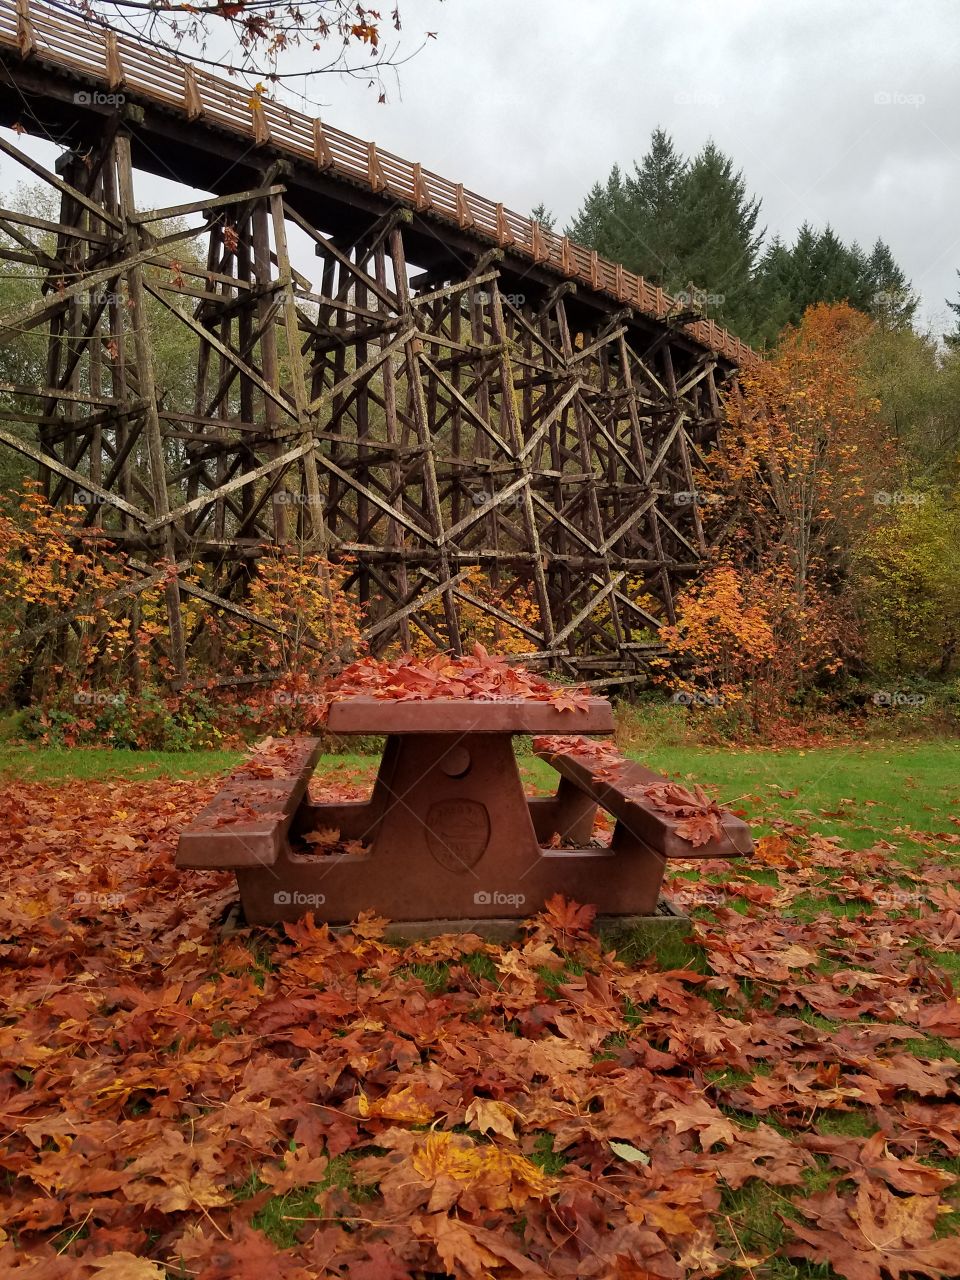 Fall colors near Portland OR